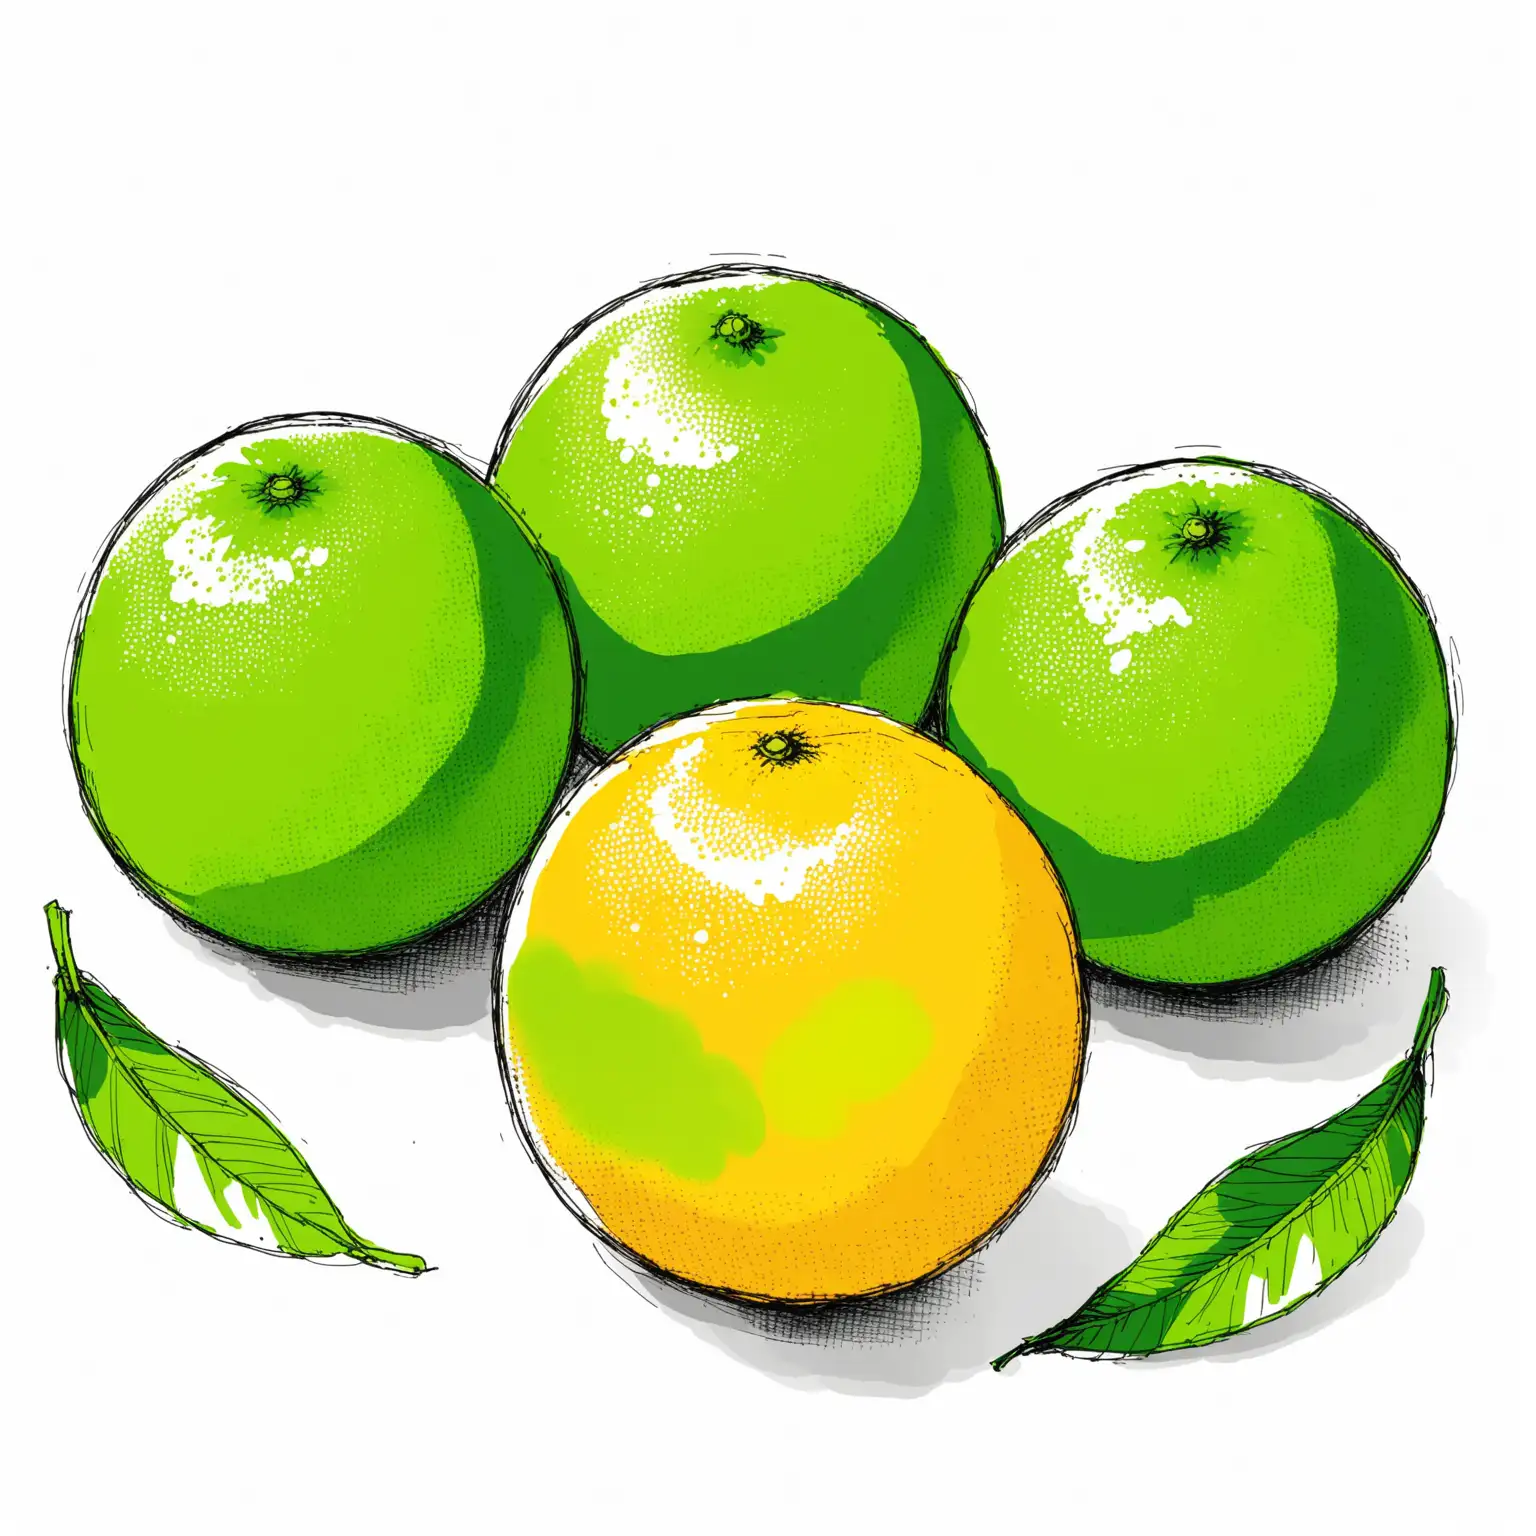 3 green oranges, sketch, white background
